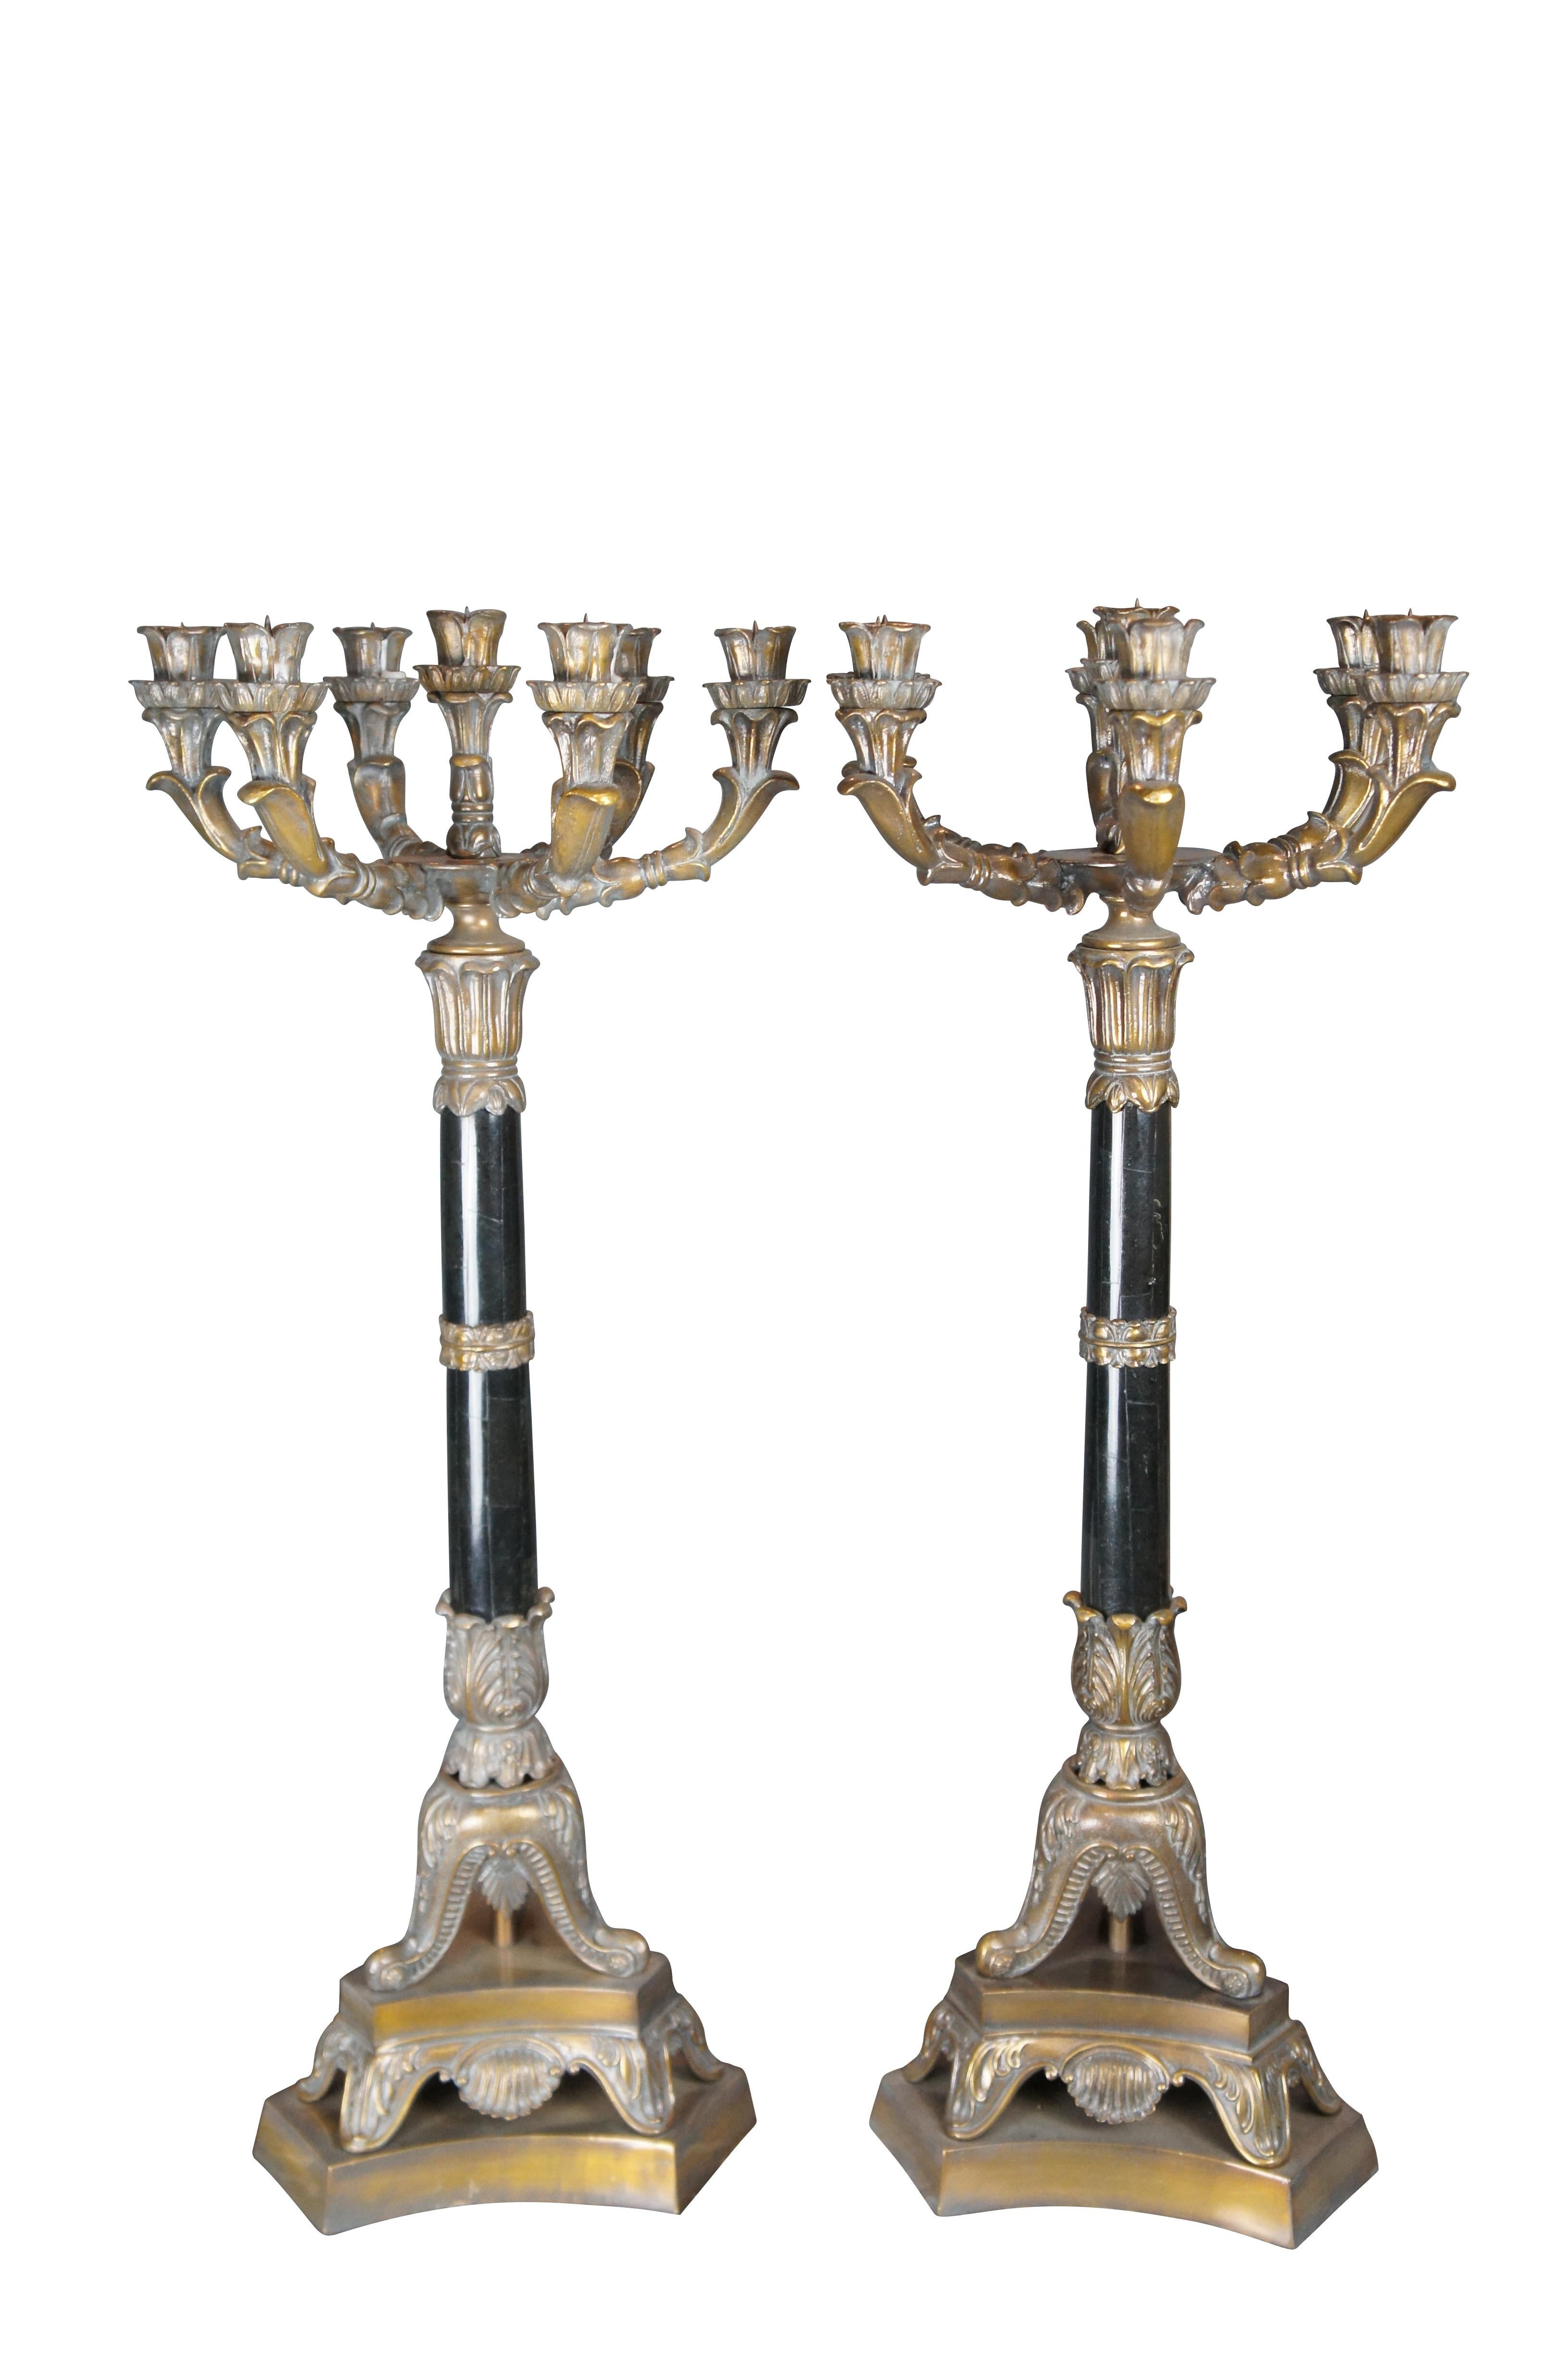 Une grande paire de chandeliers Maitland Smith, vers le dernier quart du 20e siècle. Le style français est associé à une qualité de fabrication exceptionnelle. Chaque bougeoir est en bronze et comporte un candélabre à sept lumières surmontant une